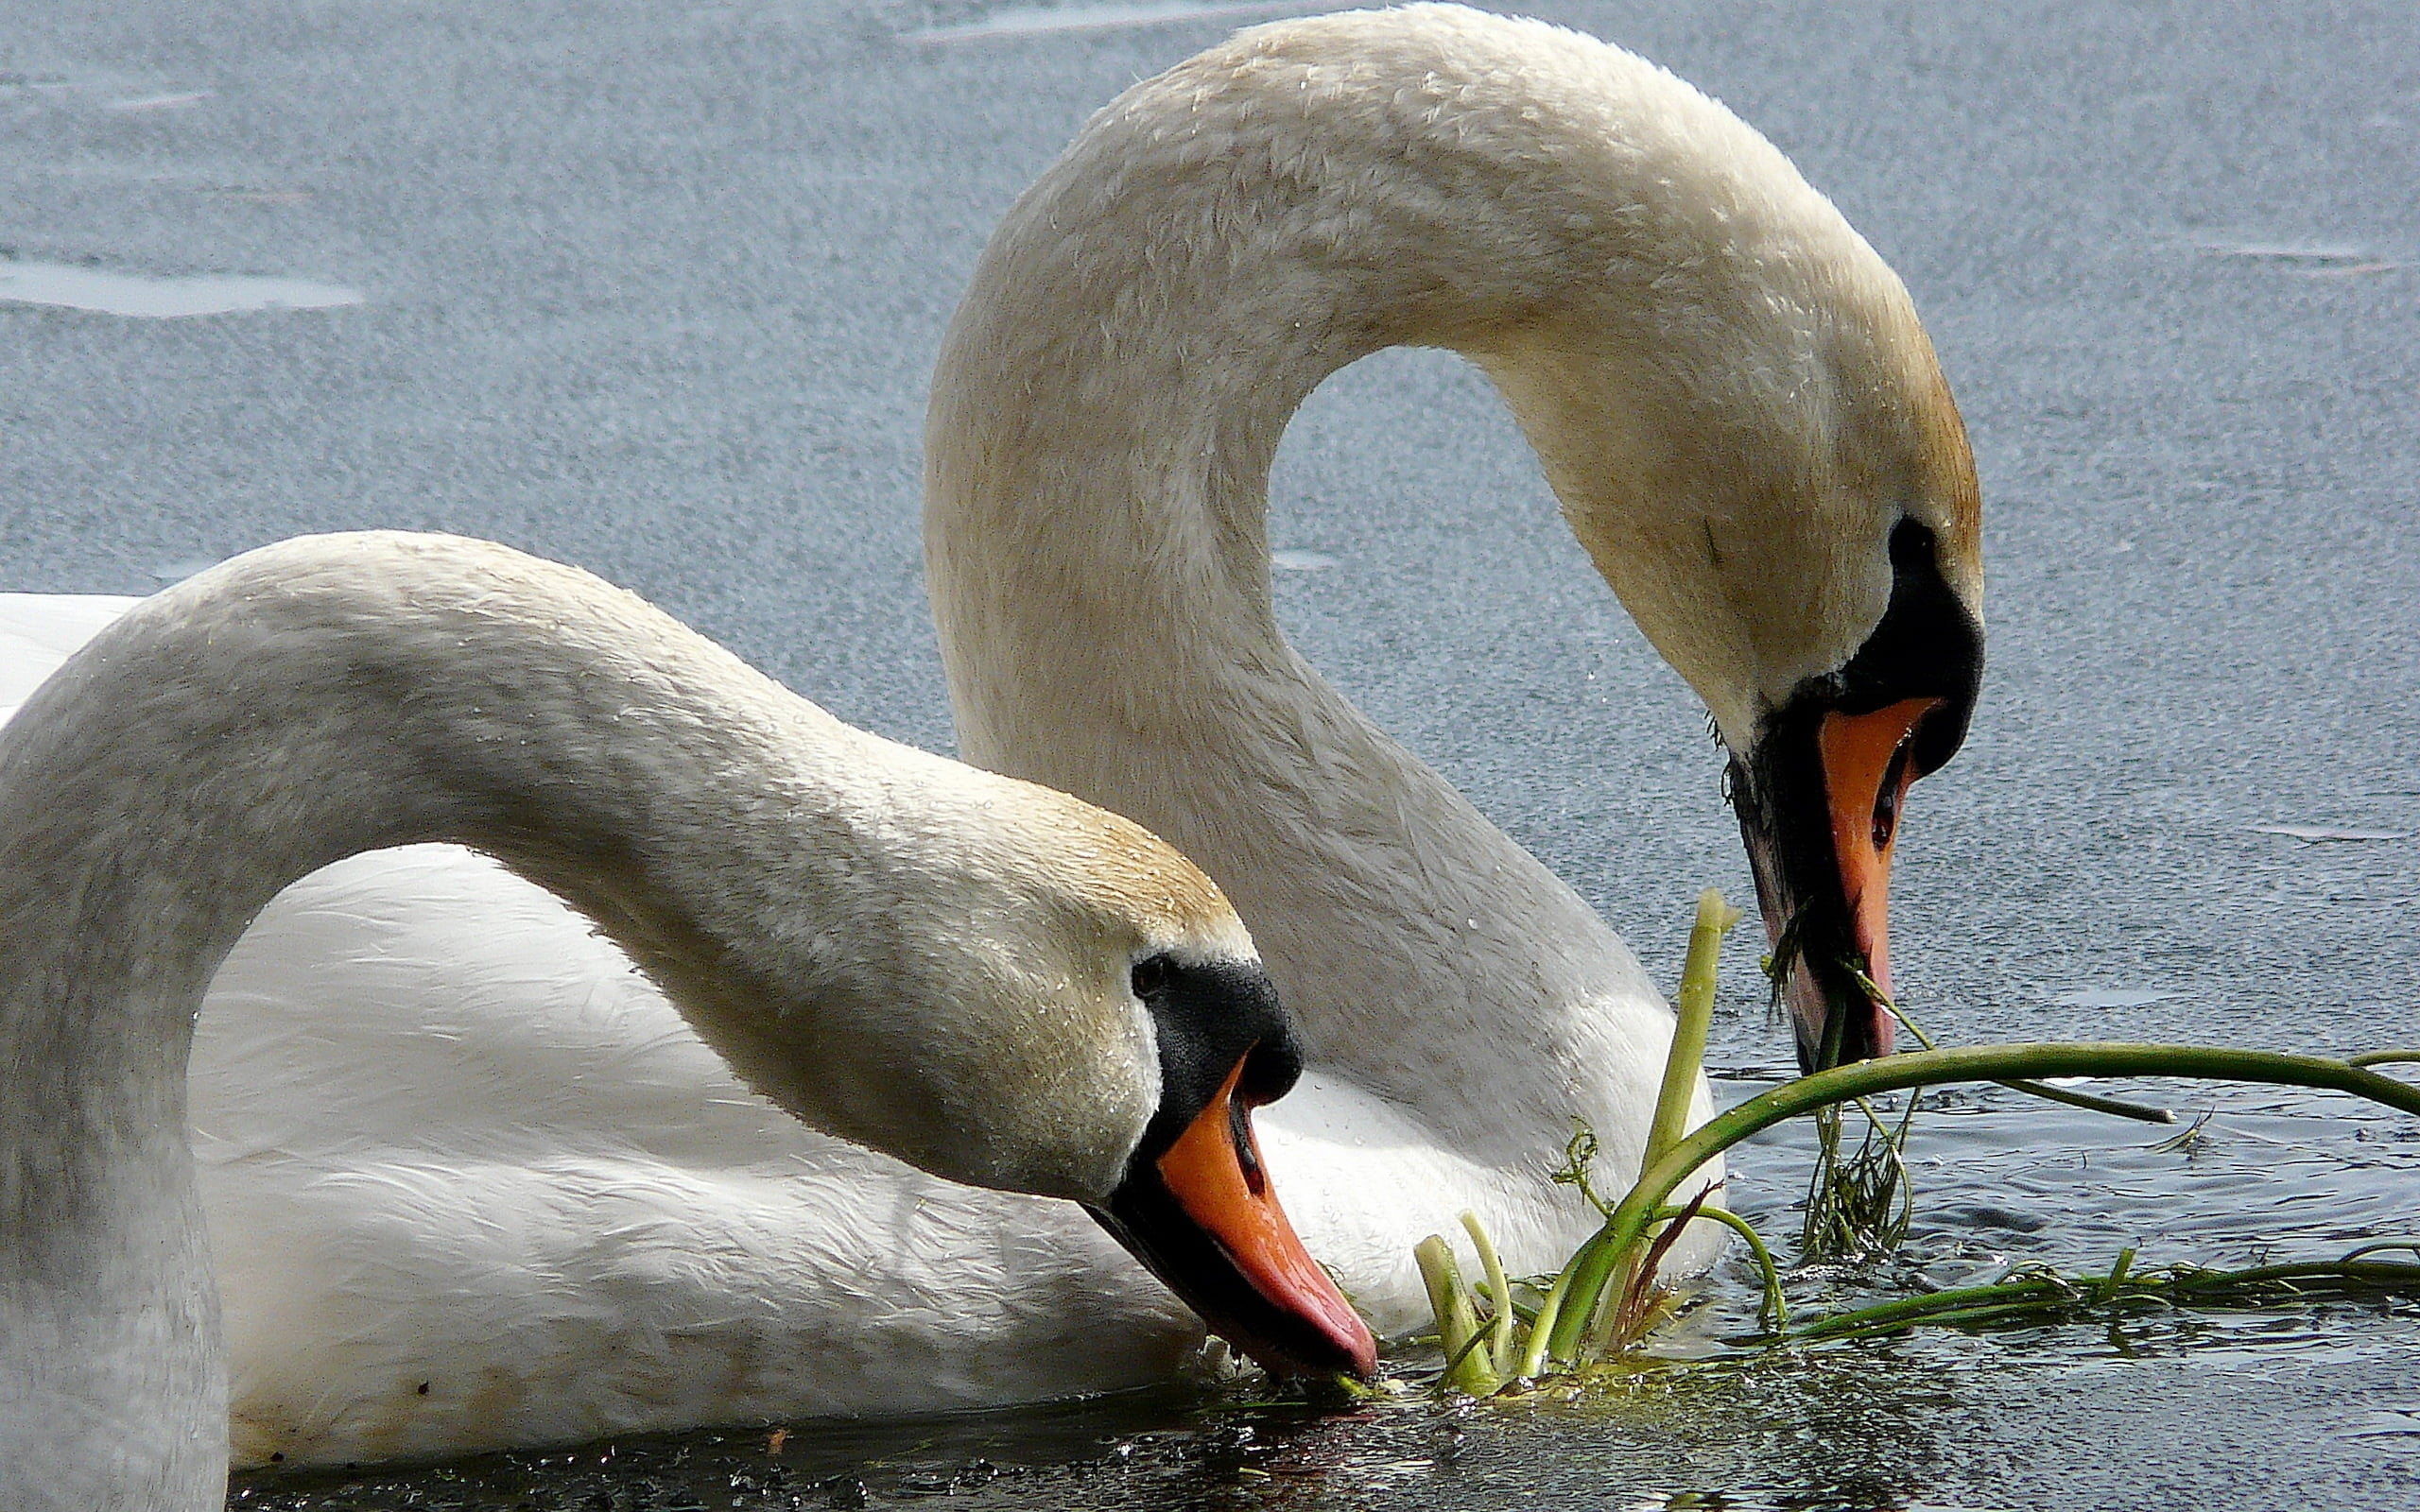 two swans on lake during daytime